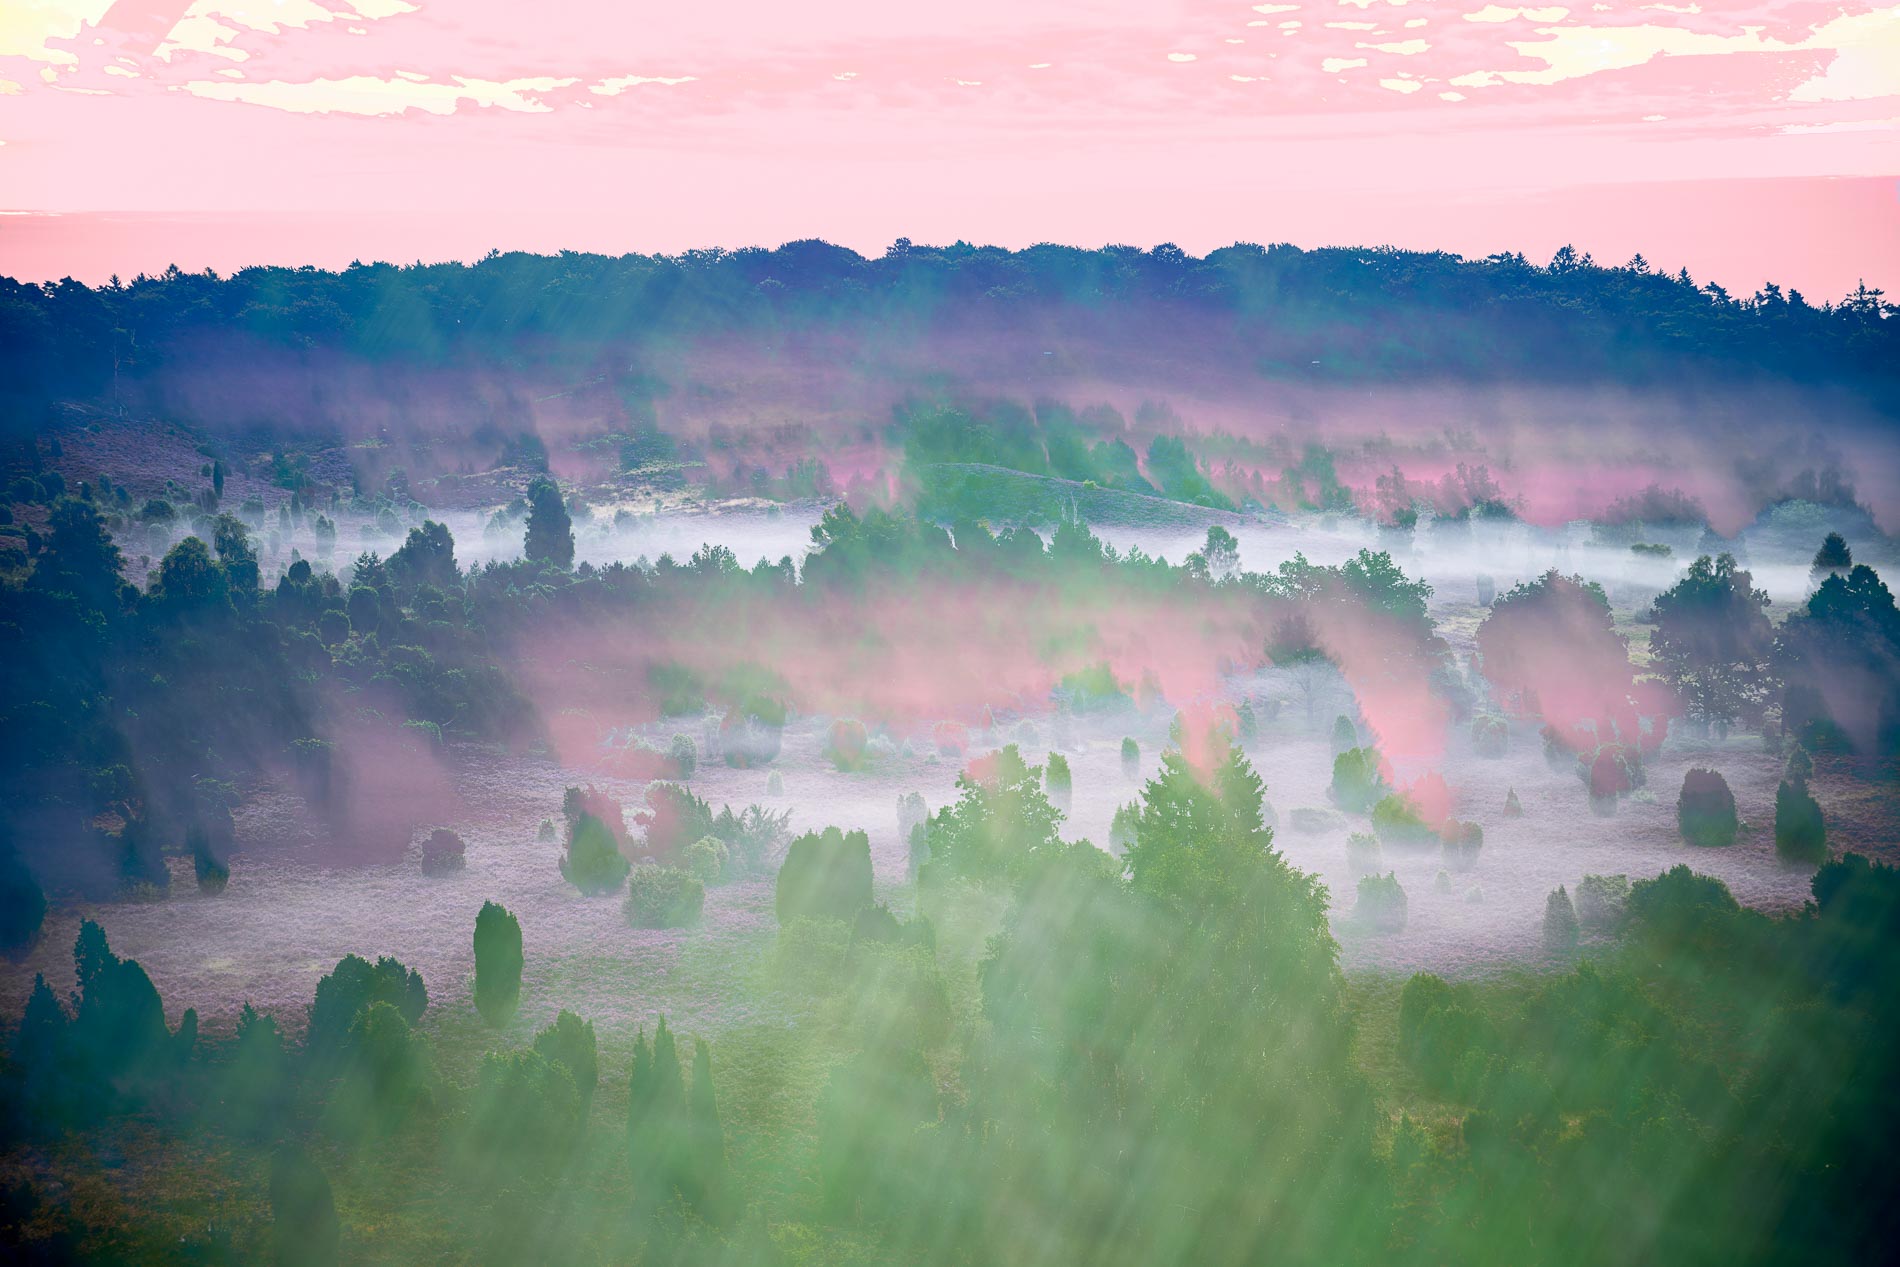 Abstrakter künstlerischer Fotografie einer nebelverhangenen Heidelandschaft. Grün- und Rottöne formen spielerisch eine romantische Traumlandschaft.